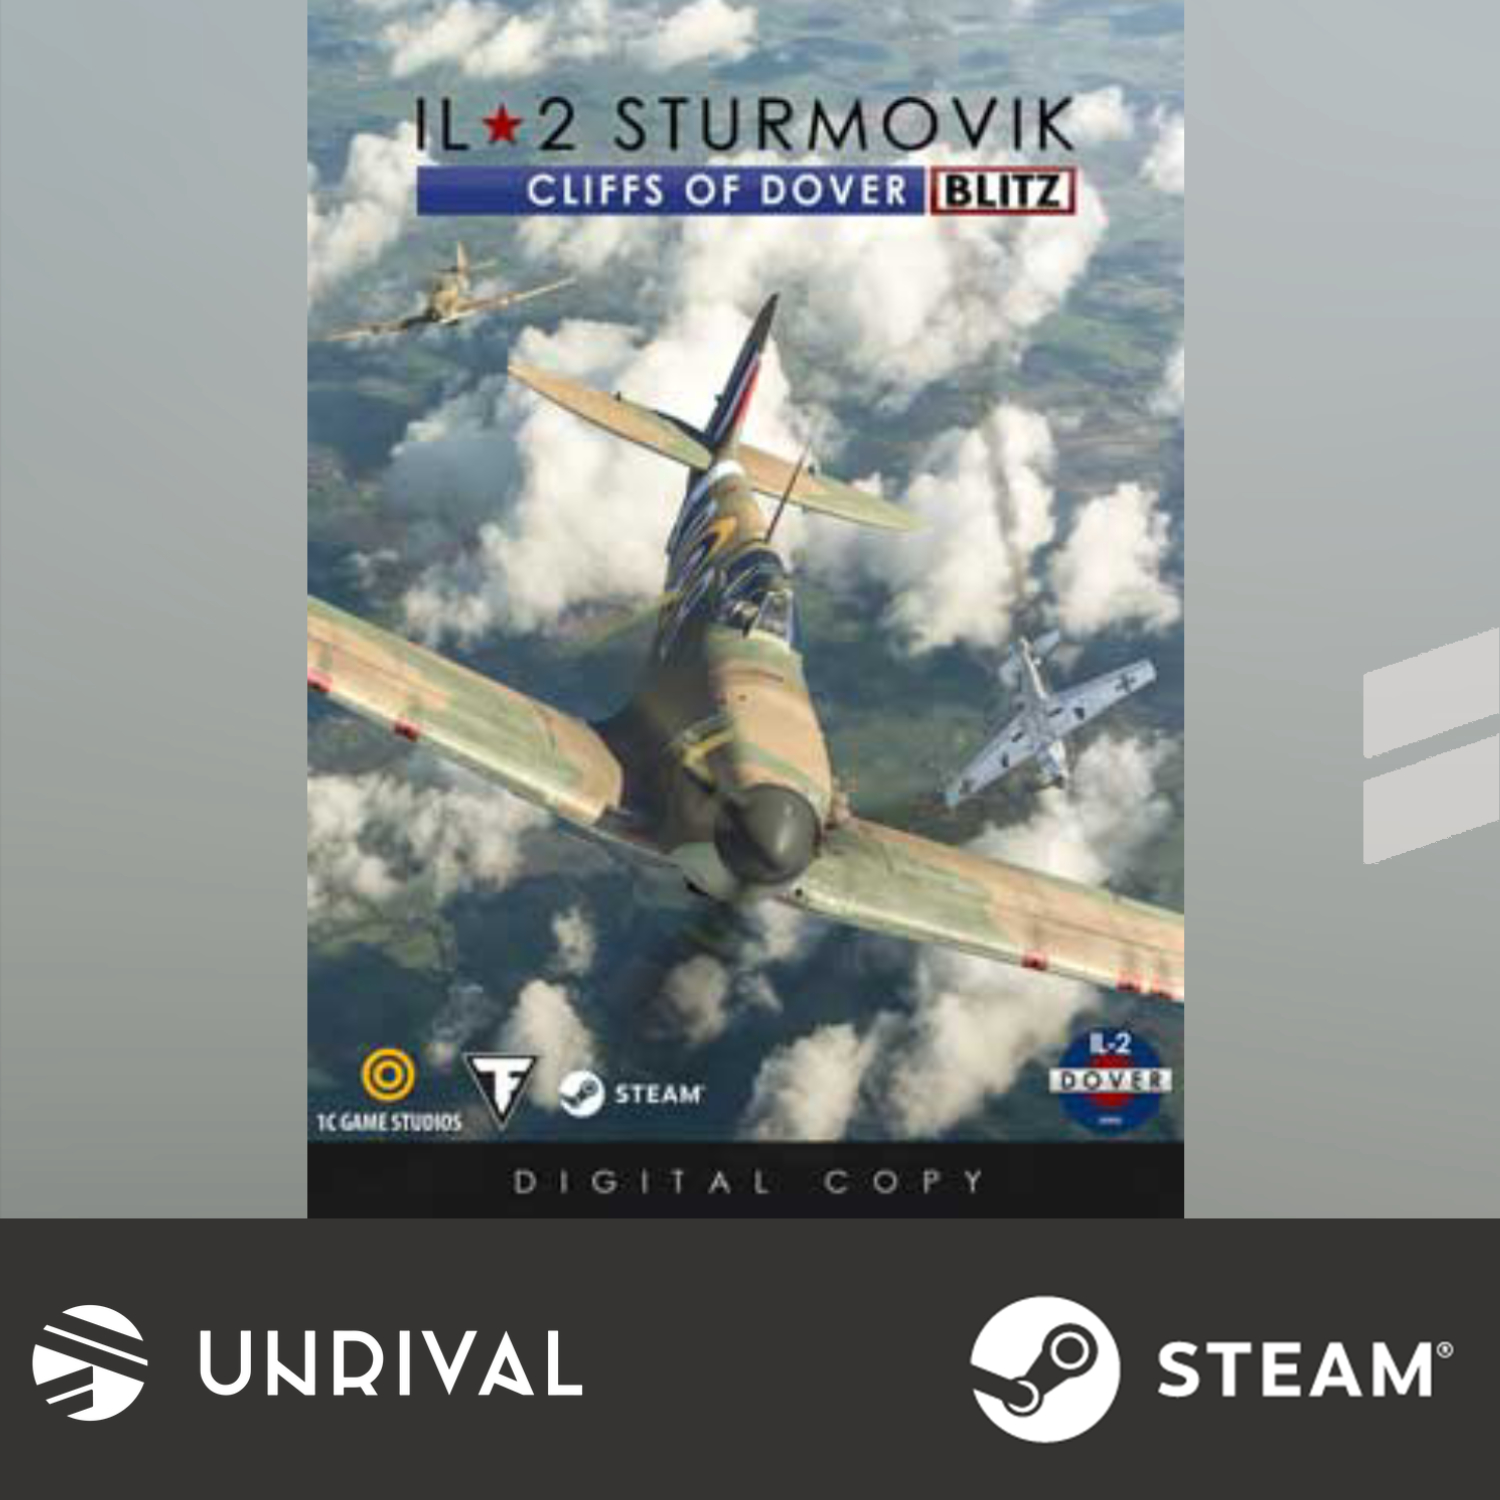 IL-2 Sturmovik: Cliffs of Dover Blitz Edition PC Digital Download Game - Unrival